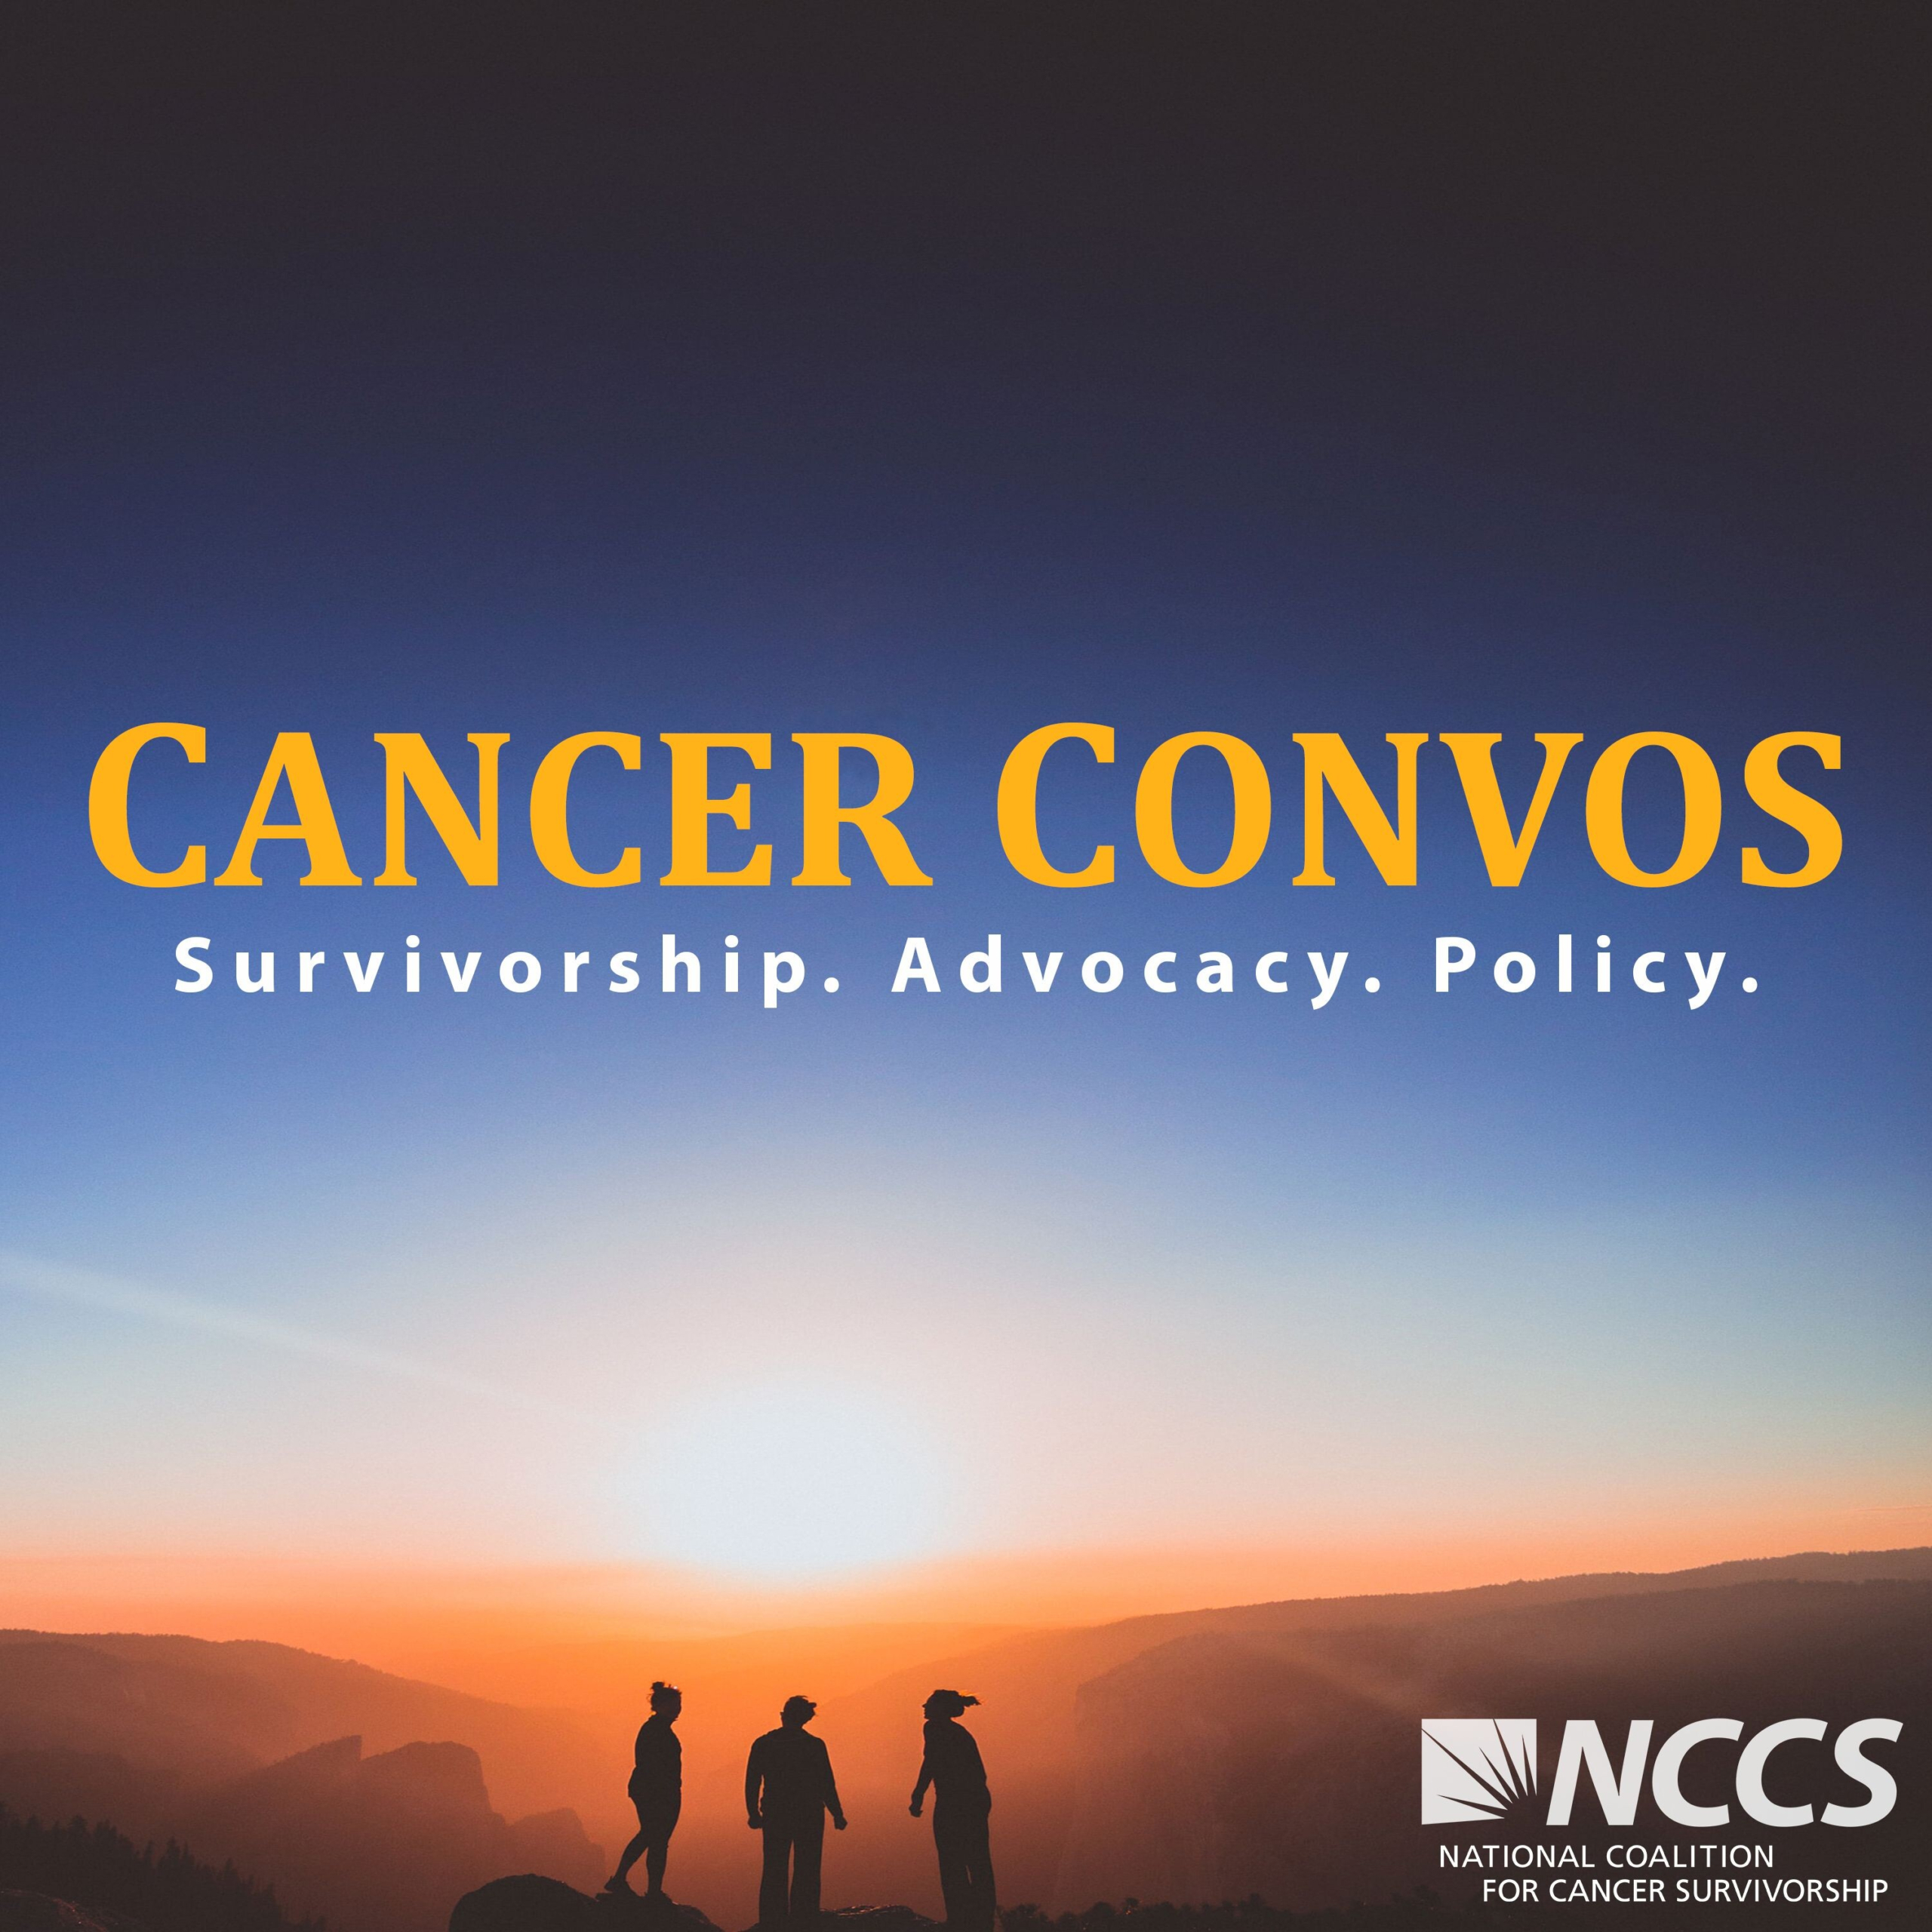 Cancer Convos: Survivorship. Advocacy. Policy